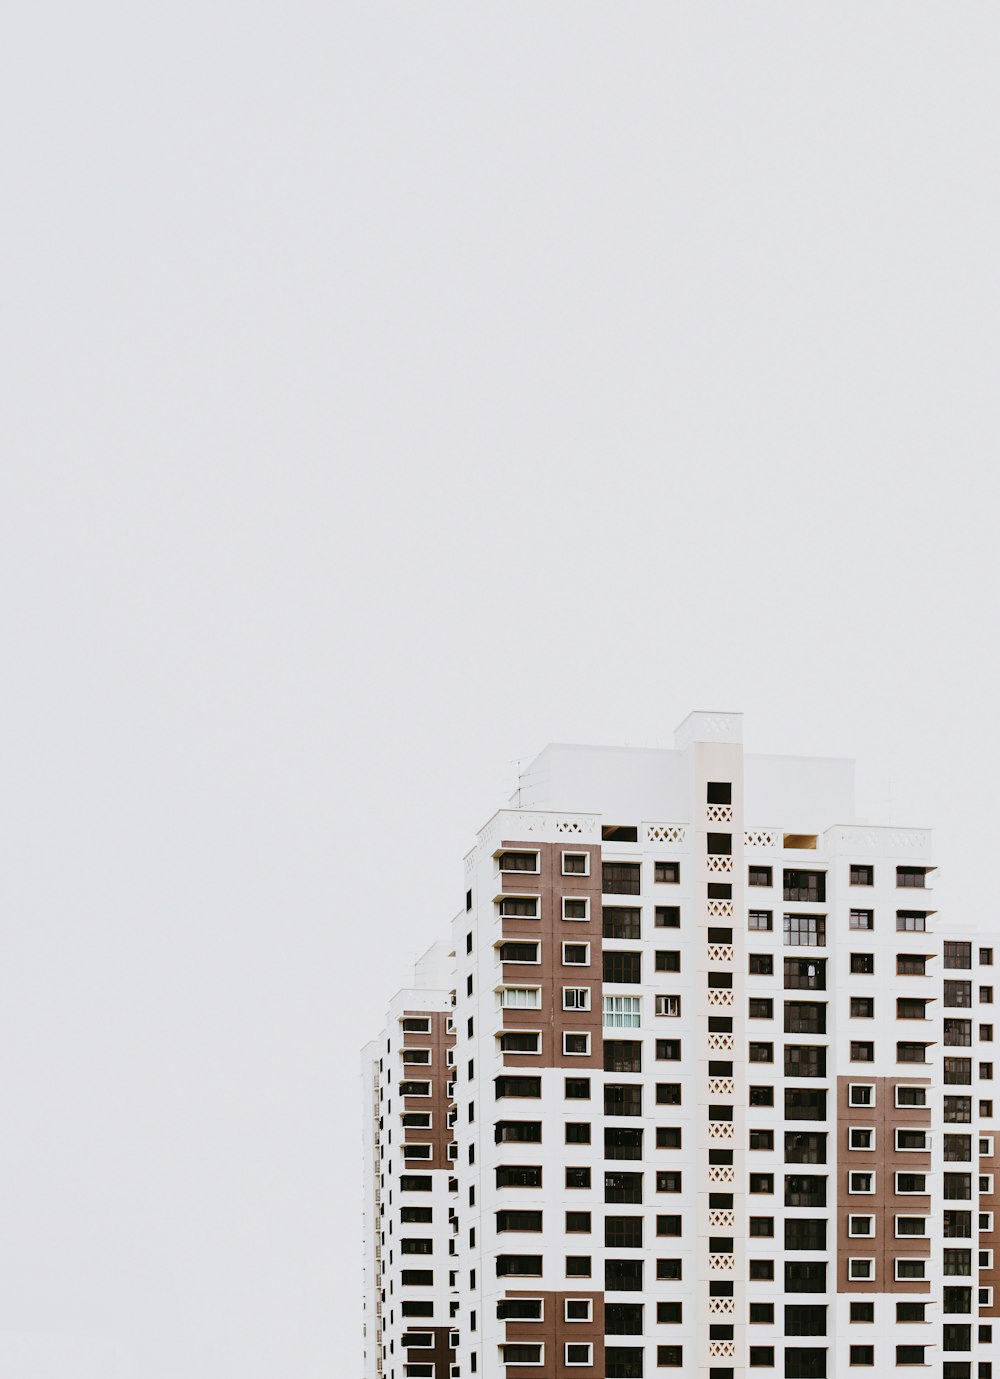 Edifício alto de concreto branco e marrom durante o dia